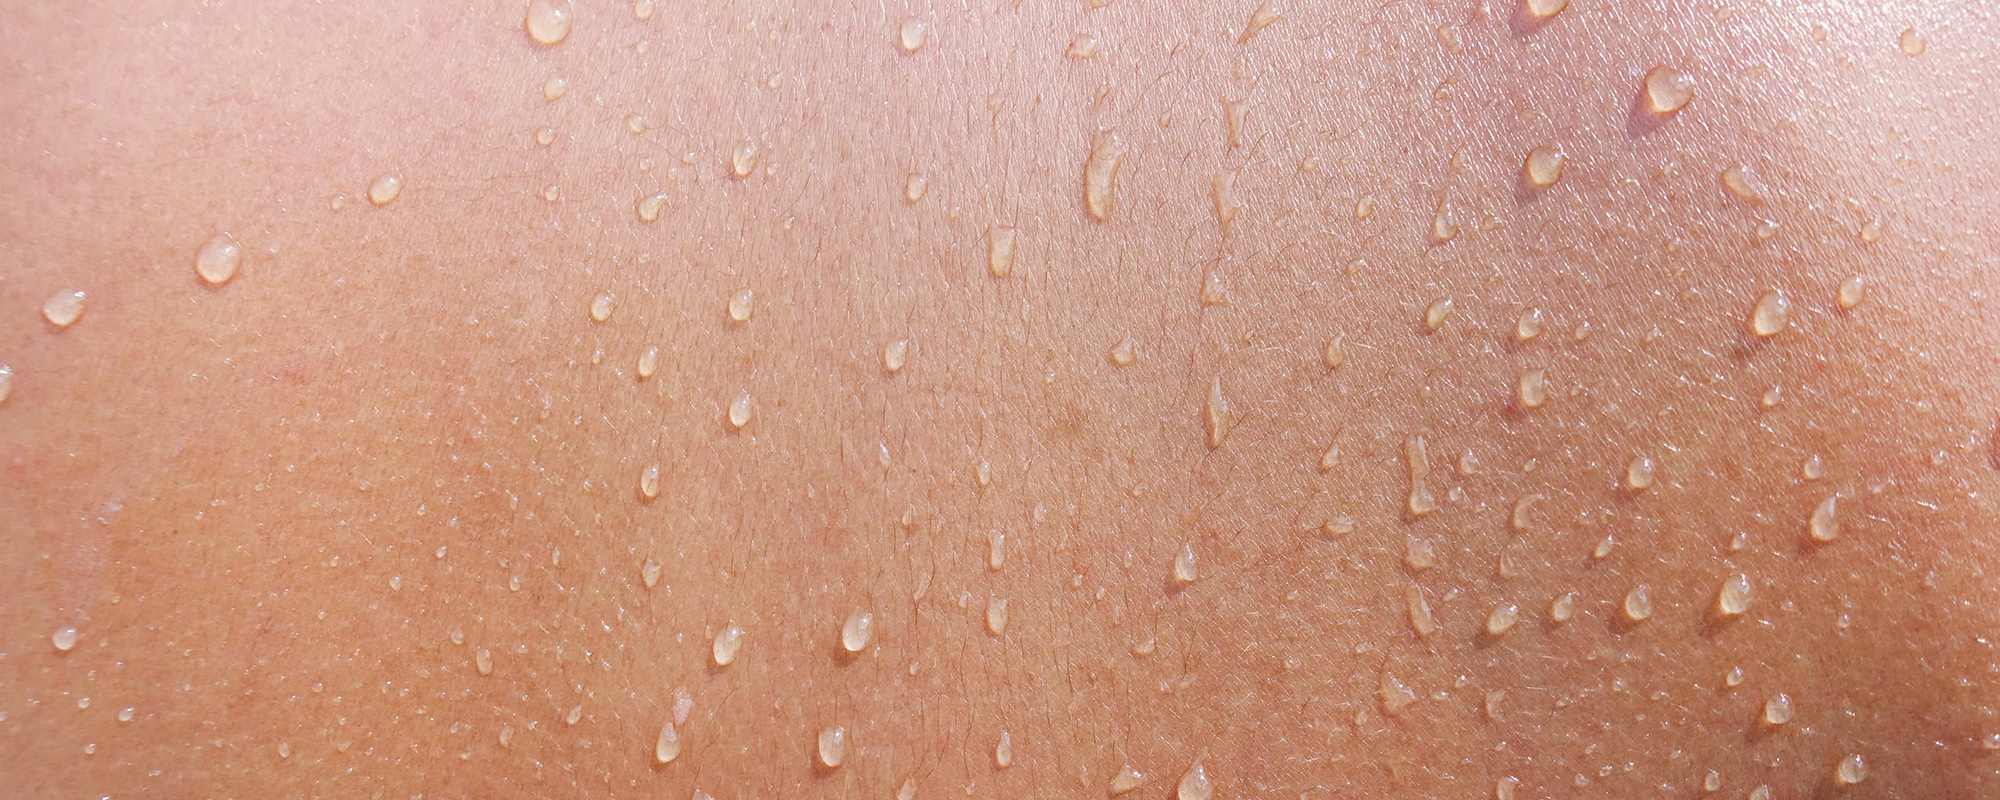 Как натуральные кислоты могут осветлить вашу кожу